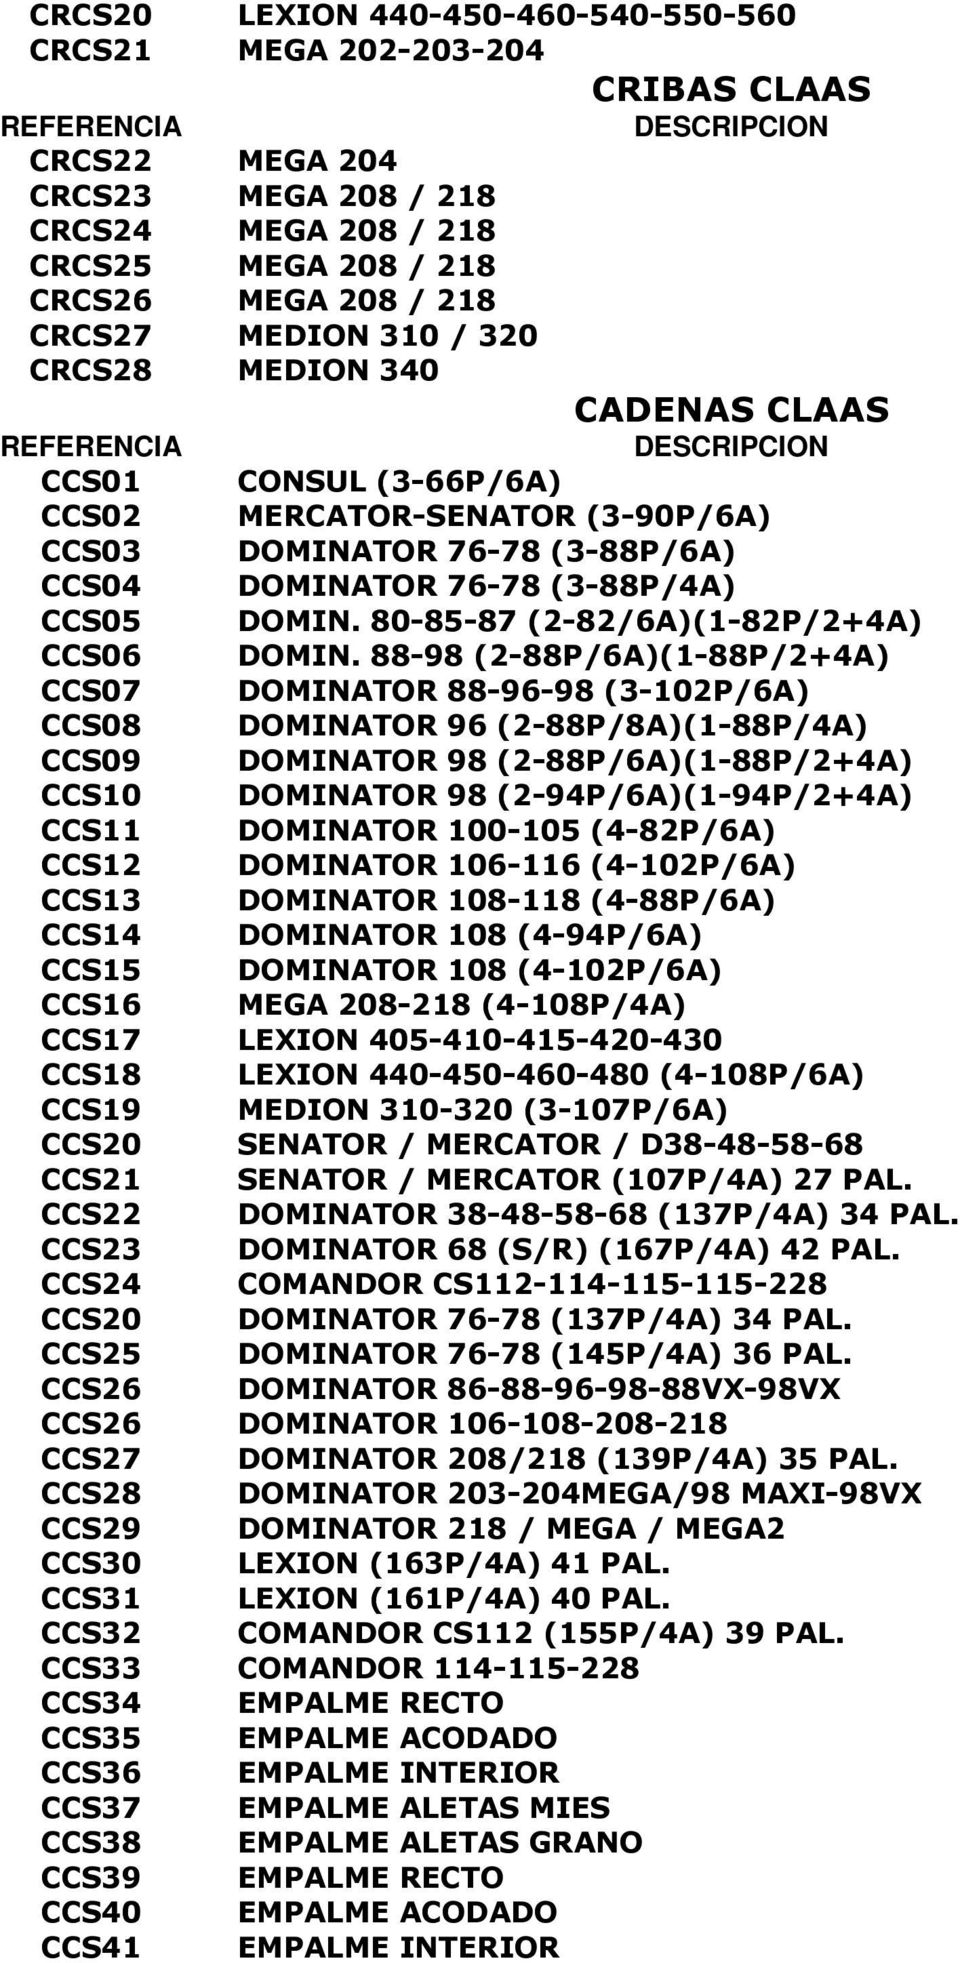 80-85-87 (2-82/6A)(1-82P/2+4A) CCS06 DOMIN.